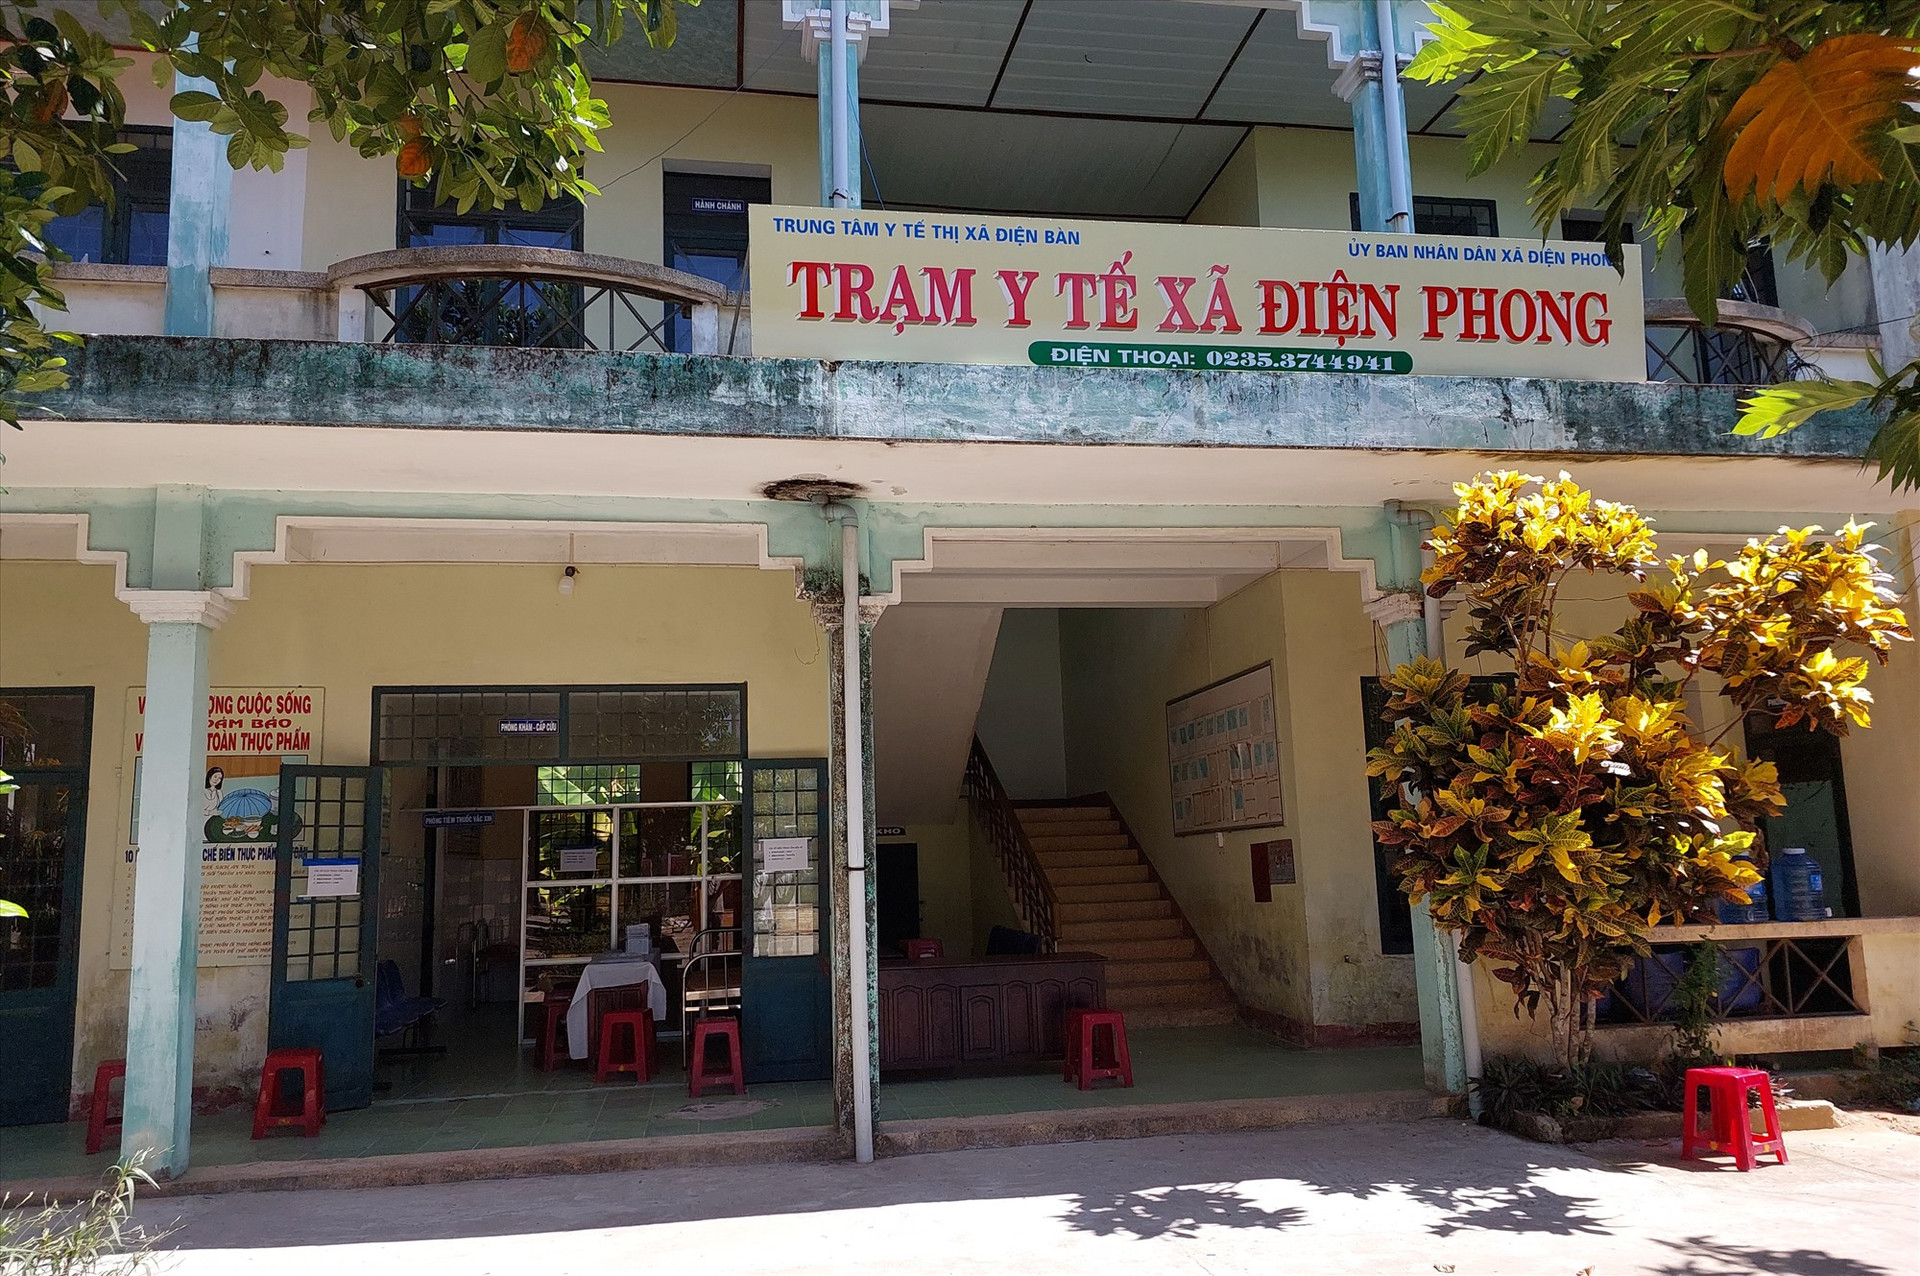 Trạm y tế xã Điện Phong là một trong 76 trạm y tế tuyến xã xuống cấp sẽ được đầu tư, nâng cấp. Ảnh: T.D